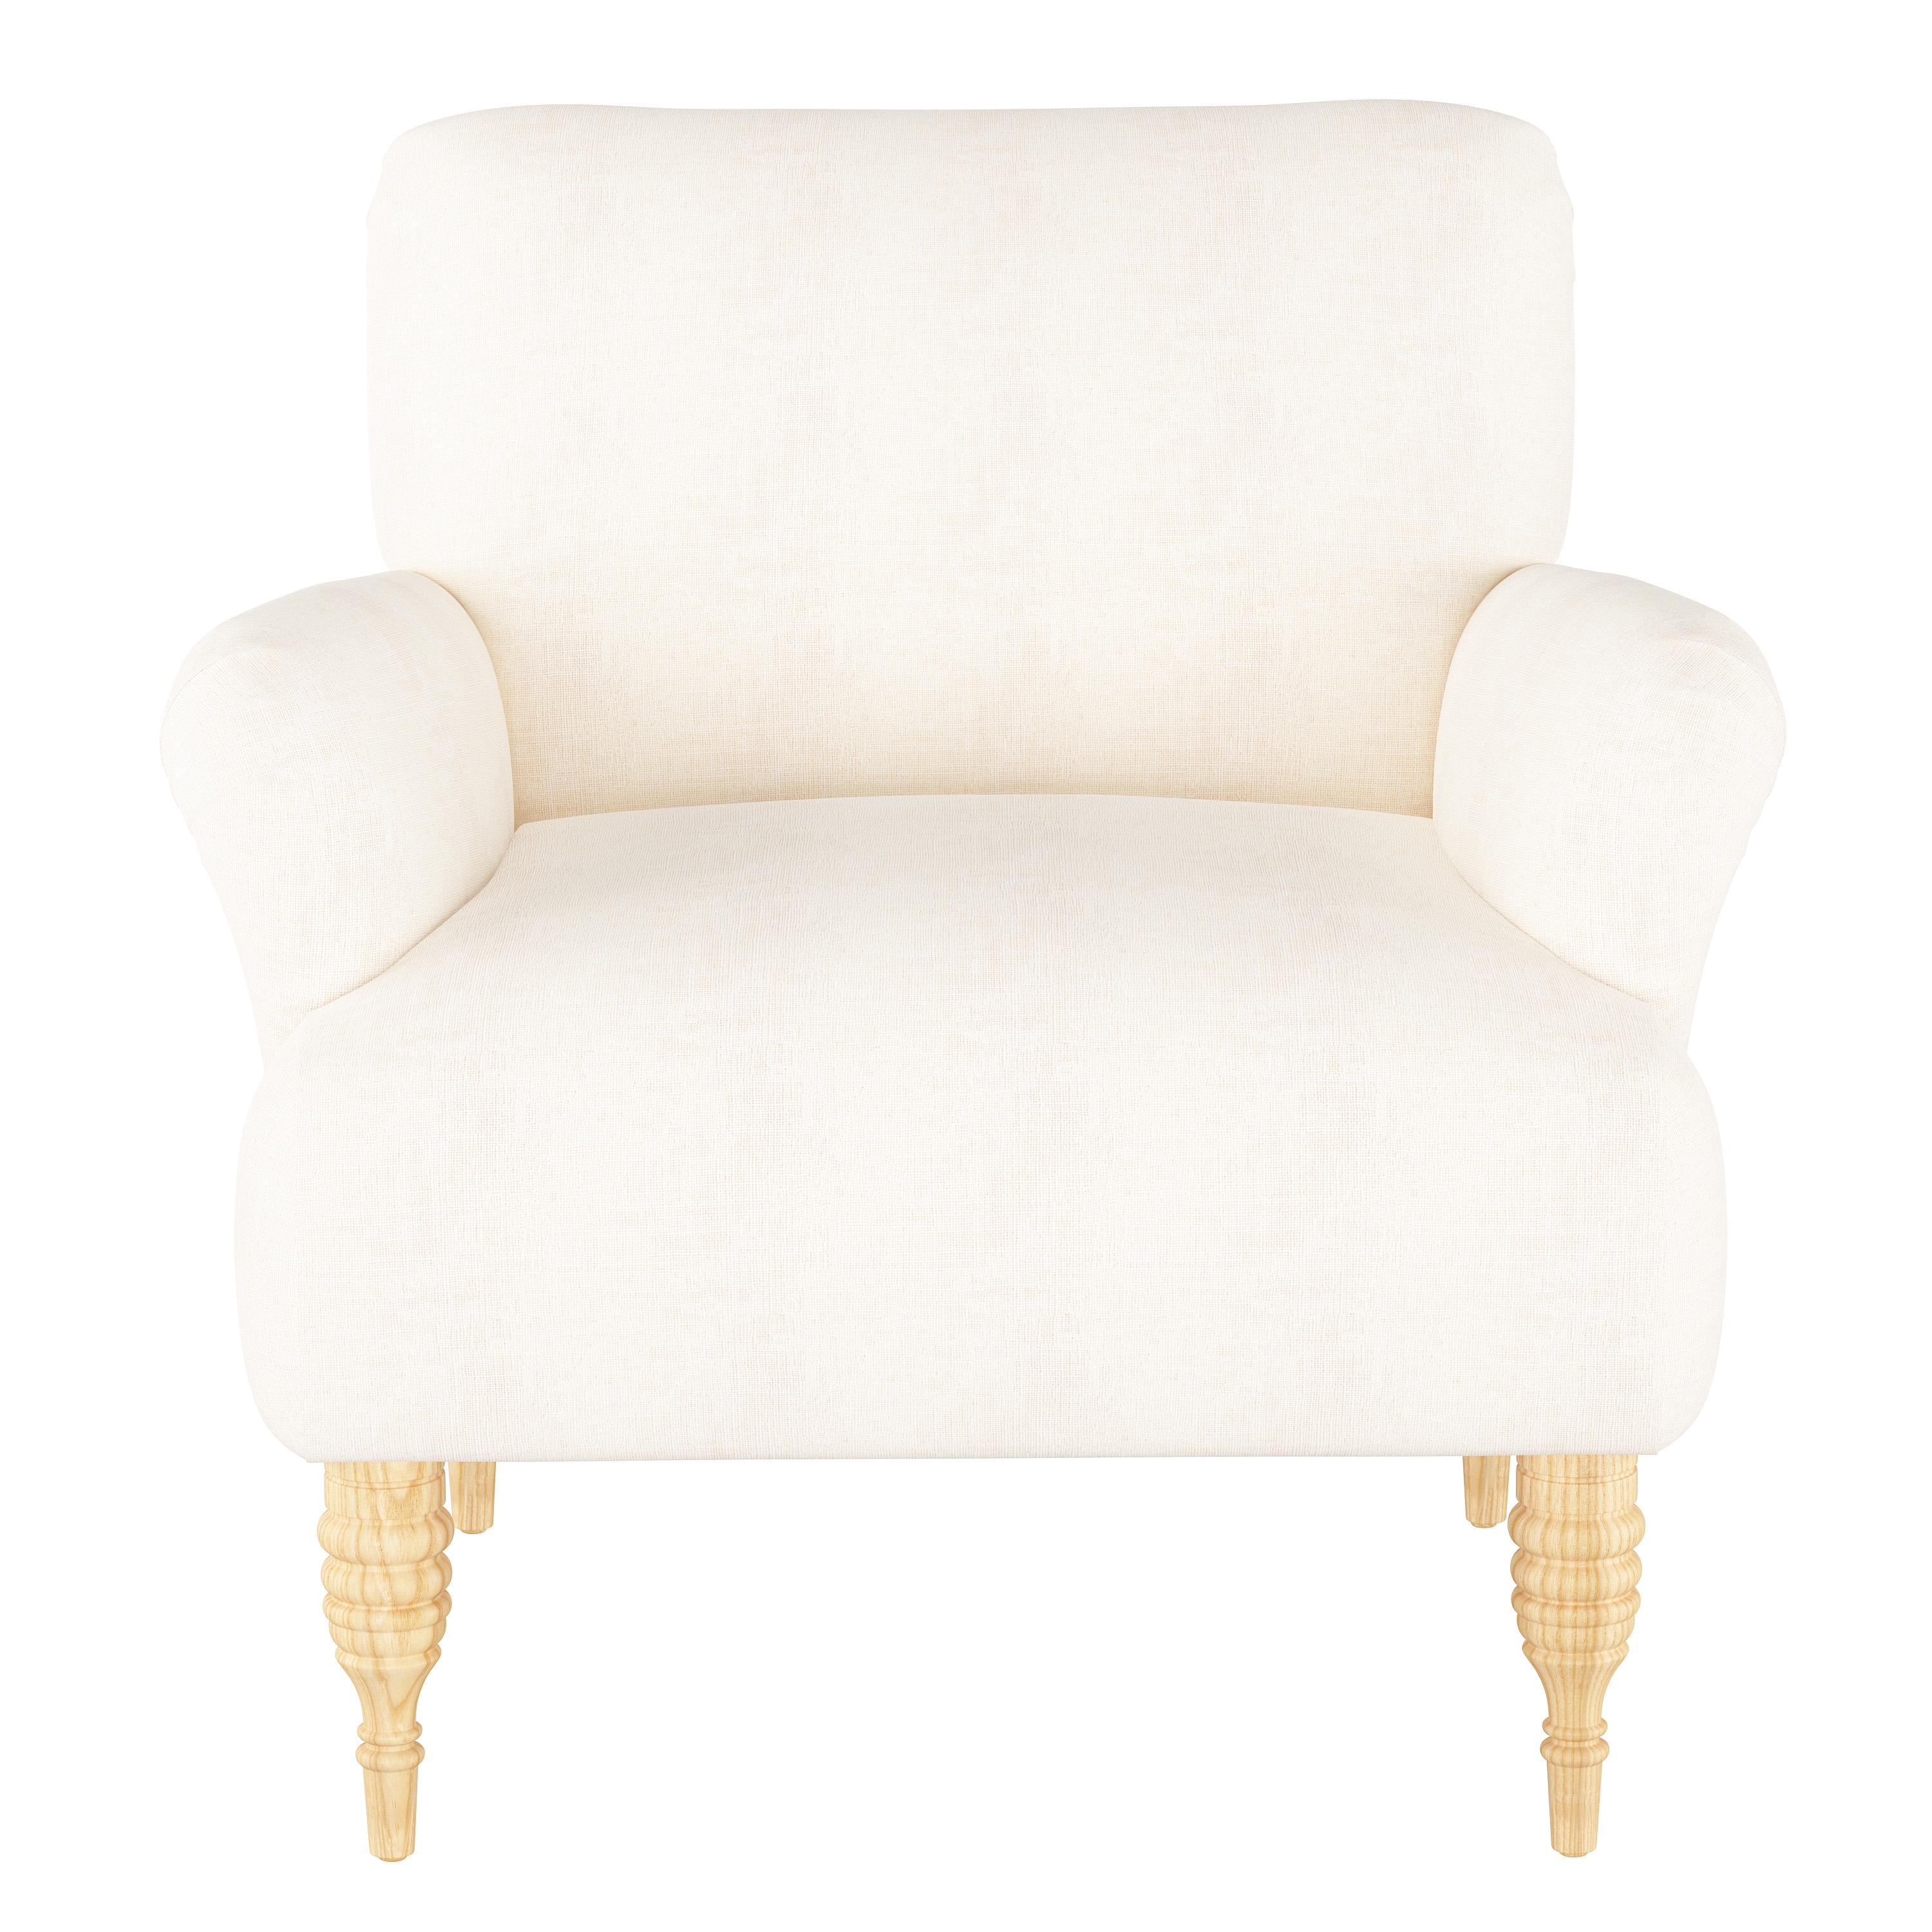 Merrill Chair, White - Image 1